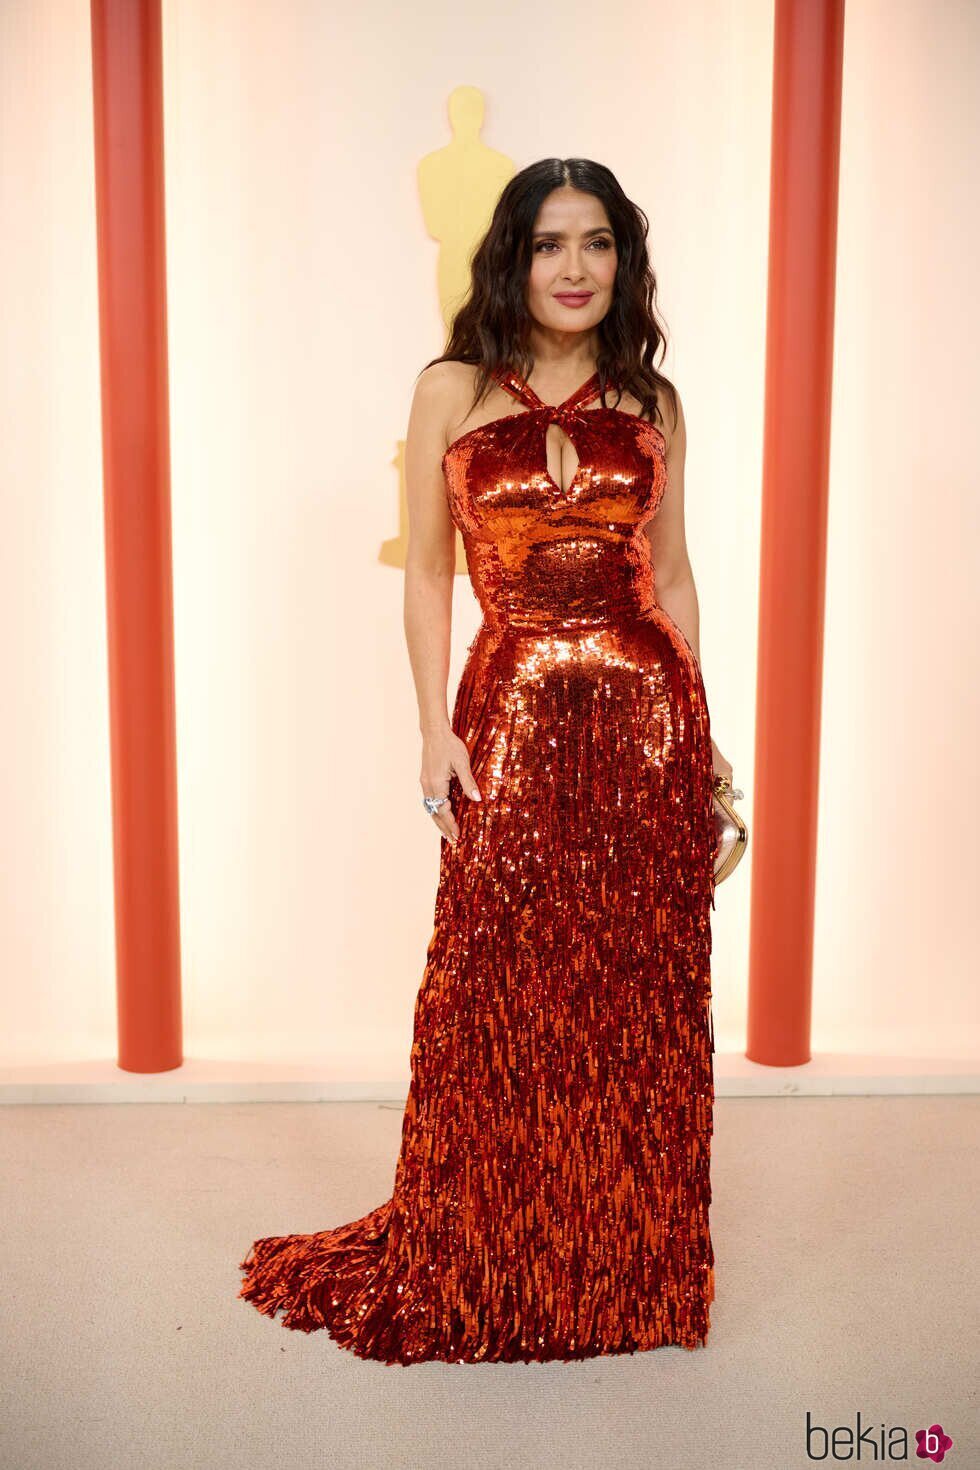 Salma Hayek En La Alfombra Roja De Los Premios Oscar Gala Y